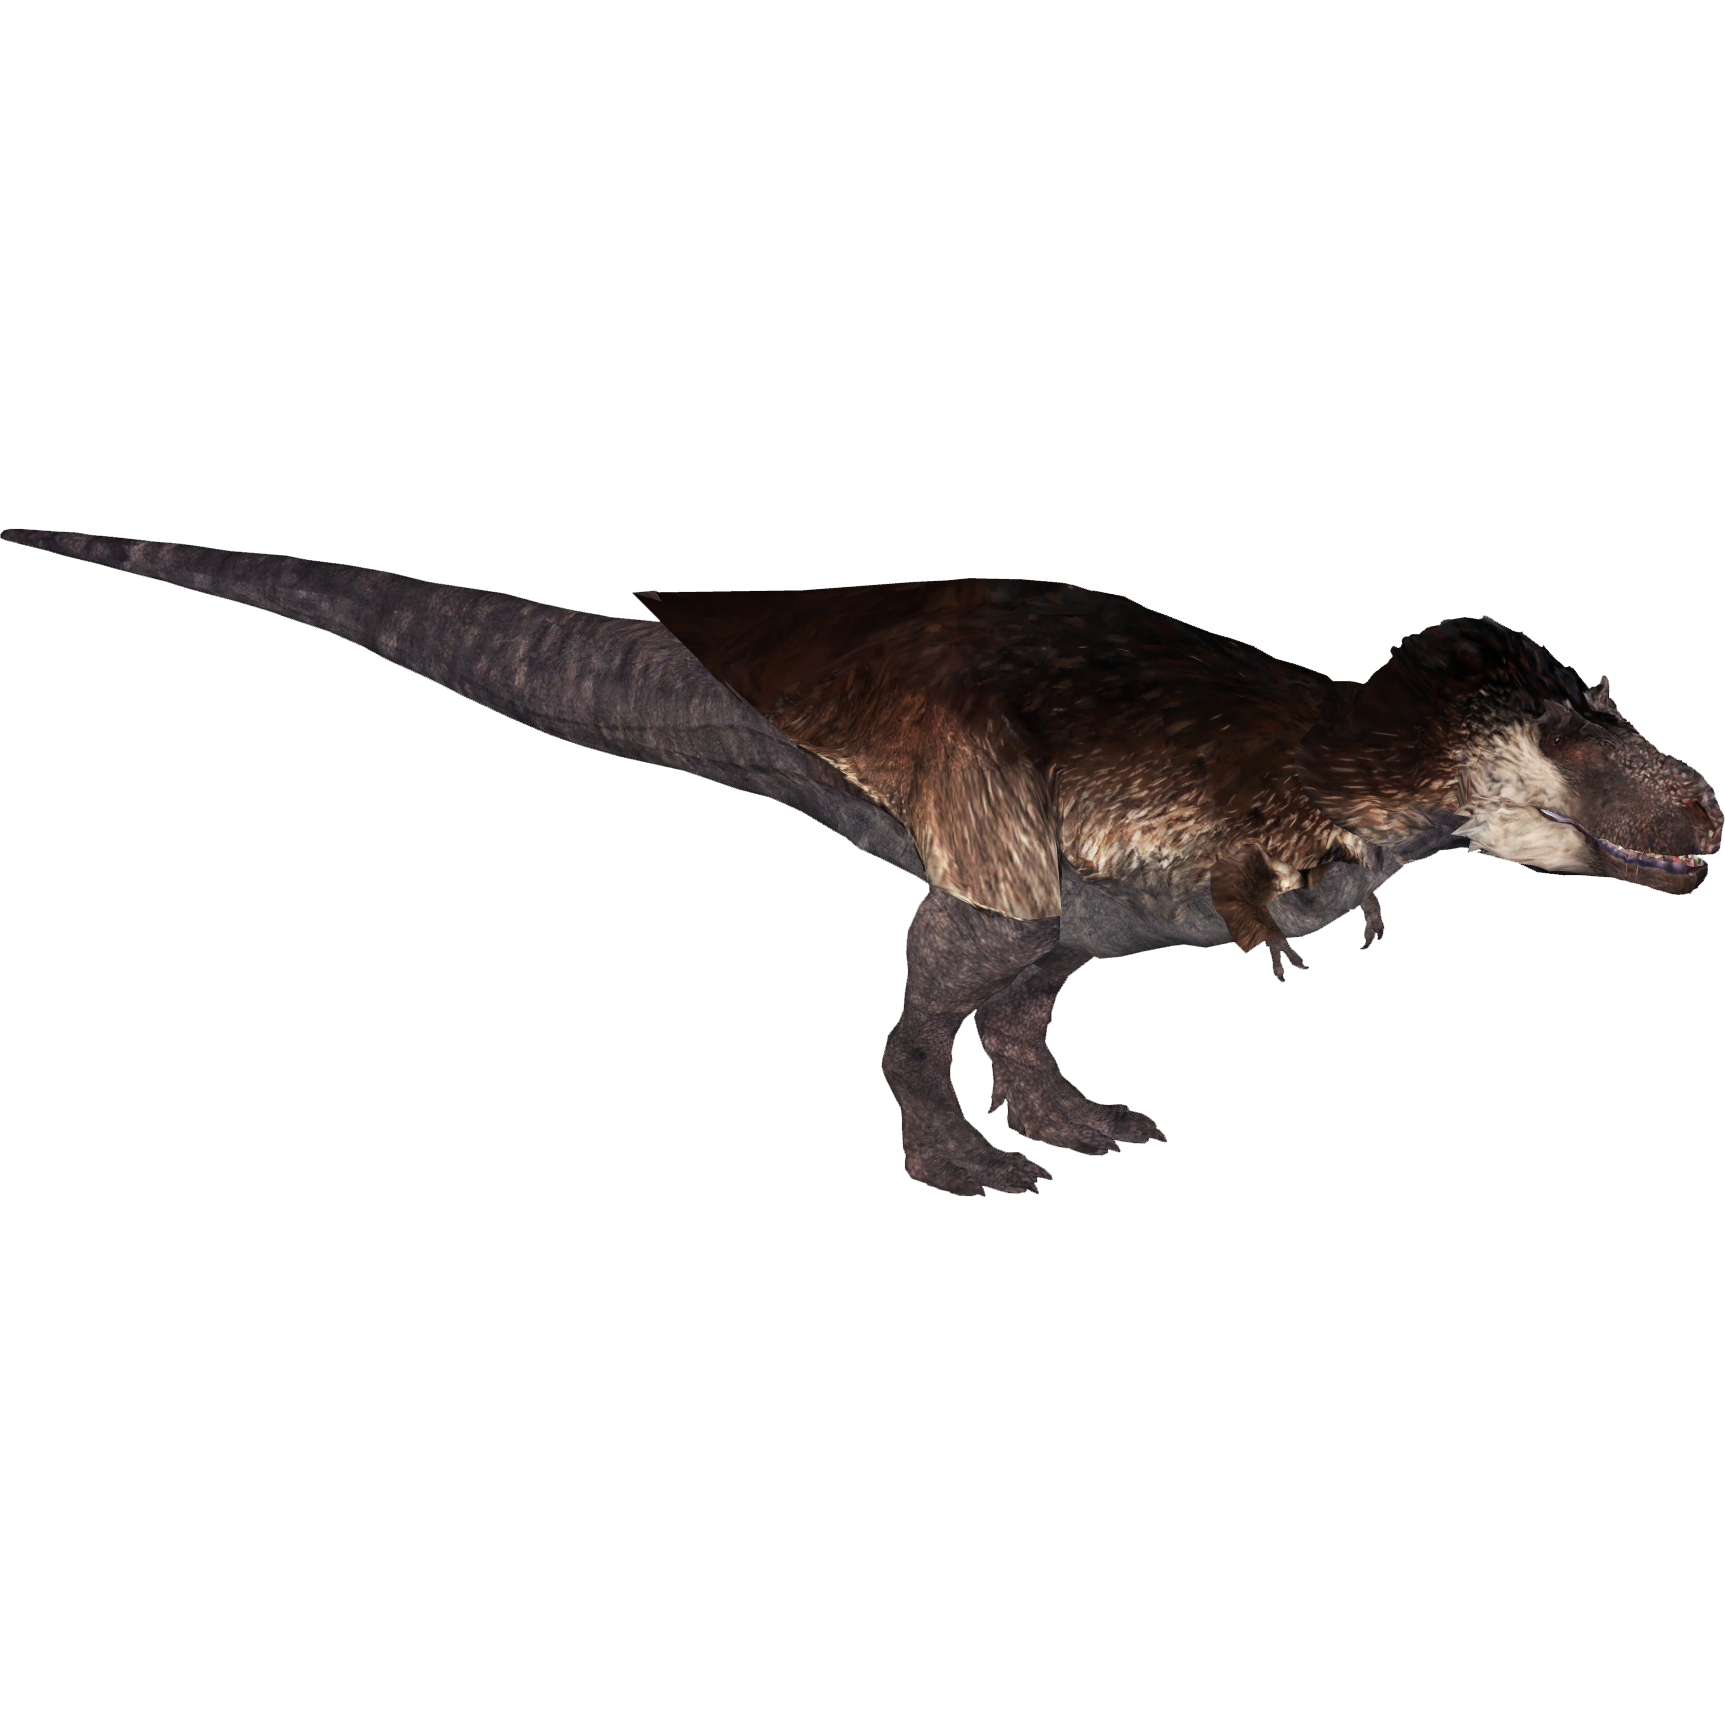 Zoo Tycoon 2: Tyrannosaurus Rex Speed Build 